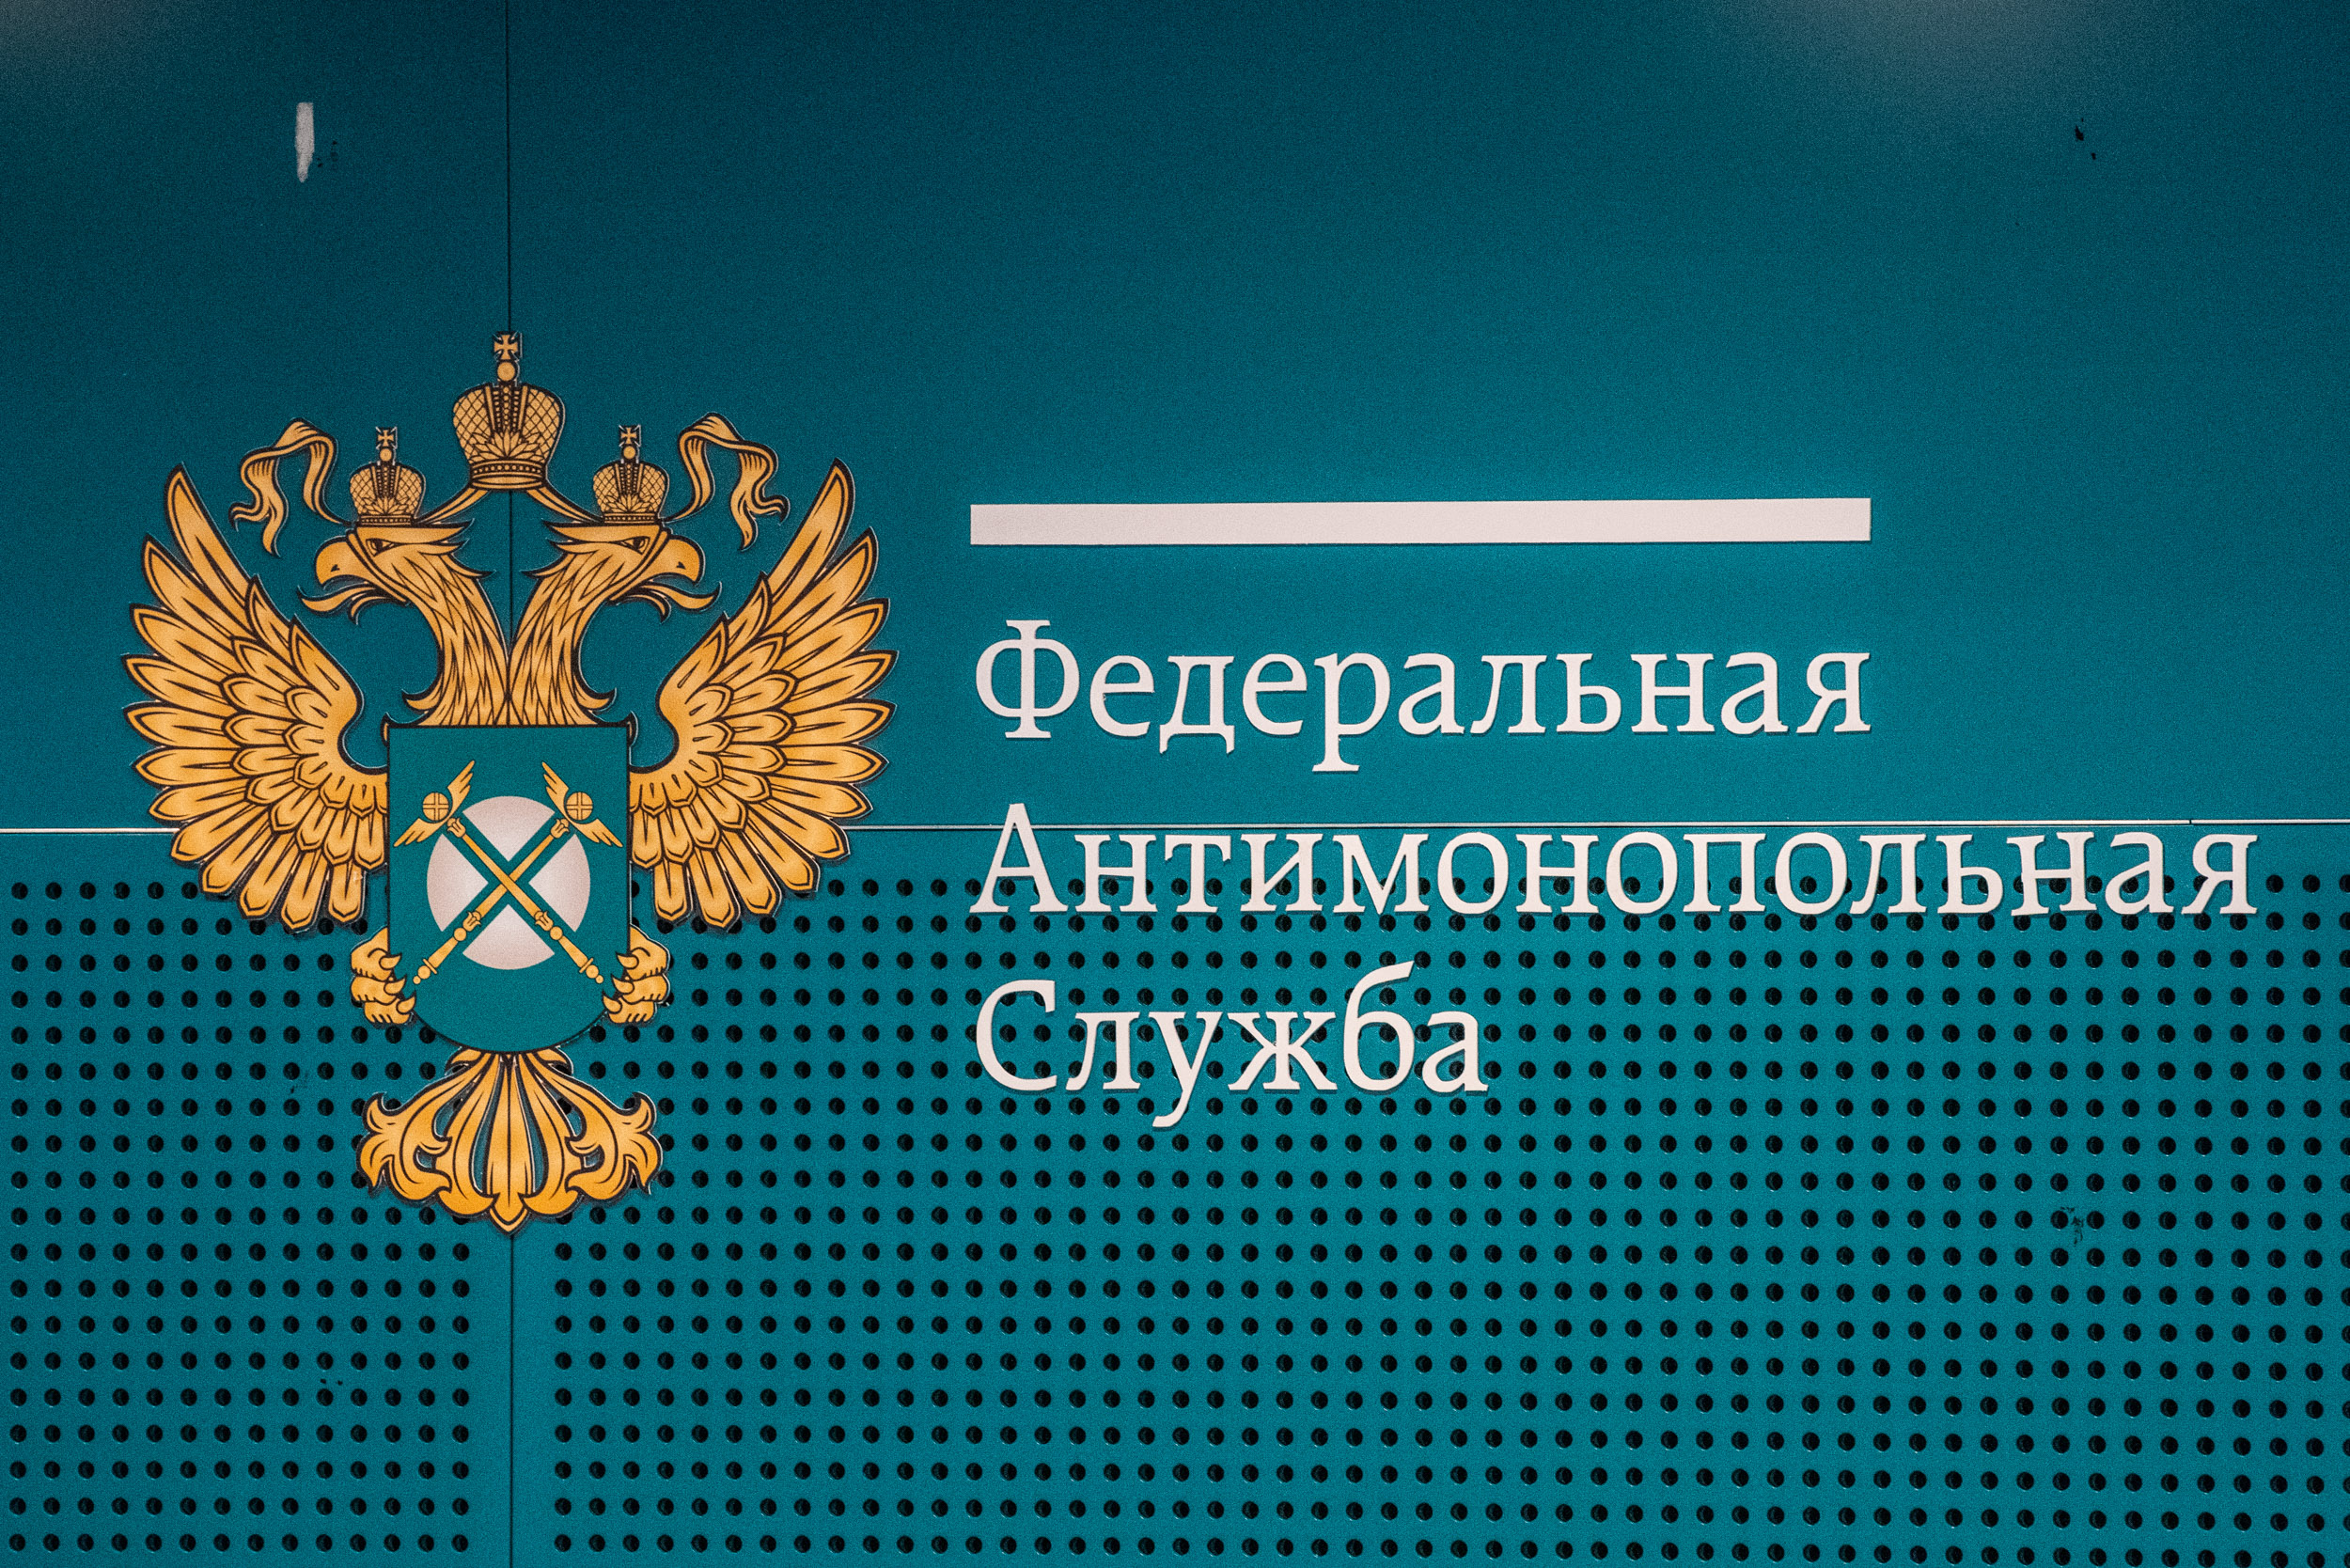 Главное управление инженерных сетей Татарстана нарушило закон, укрупнив закупку в 115,5 млн рублей